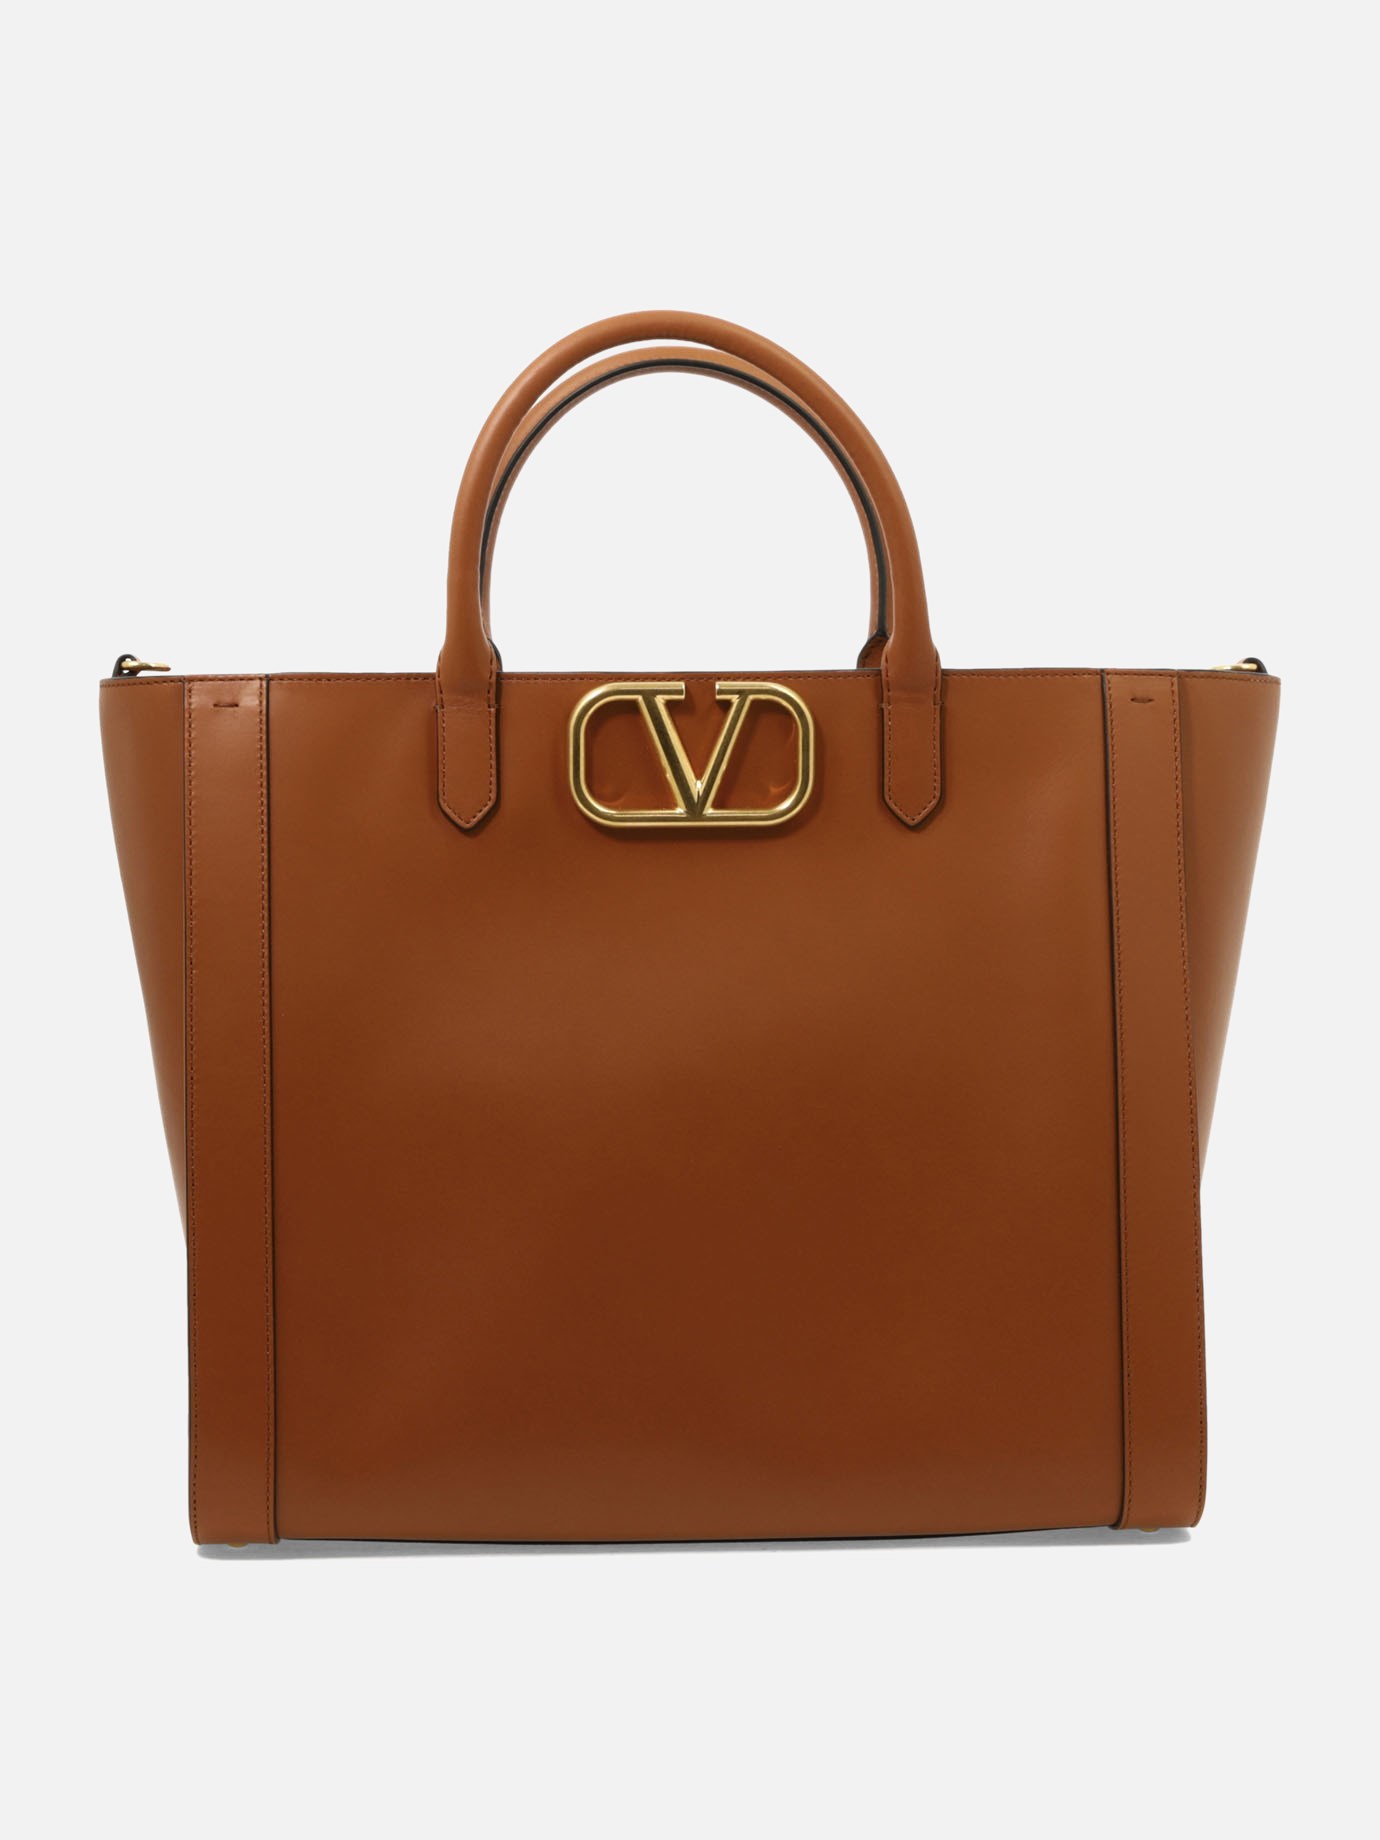  VLogo  handbagby Valentino Garavani - 4